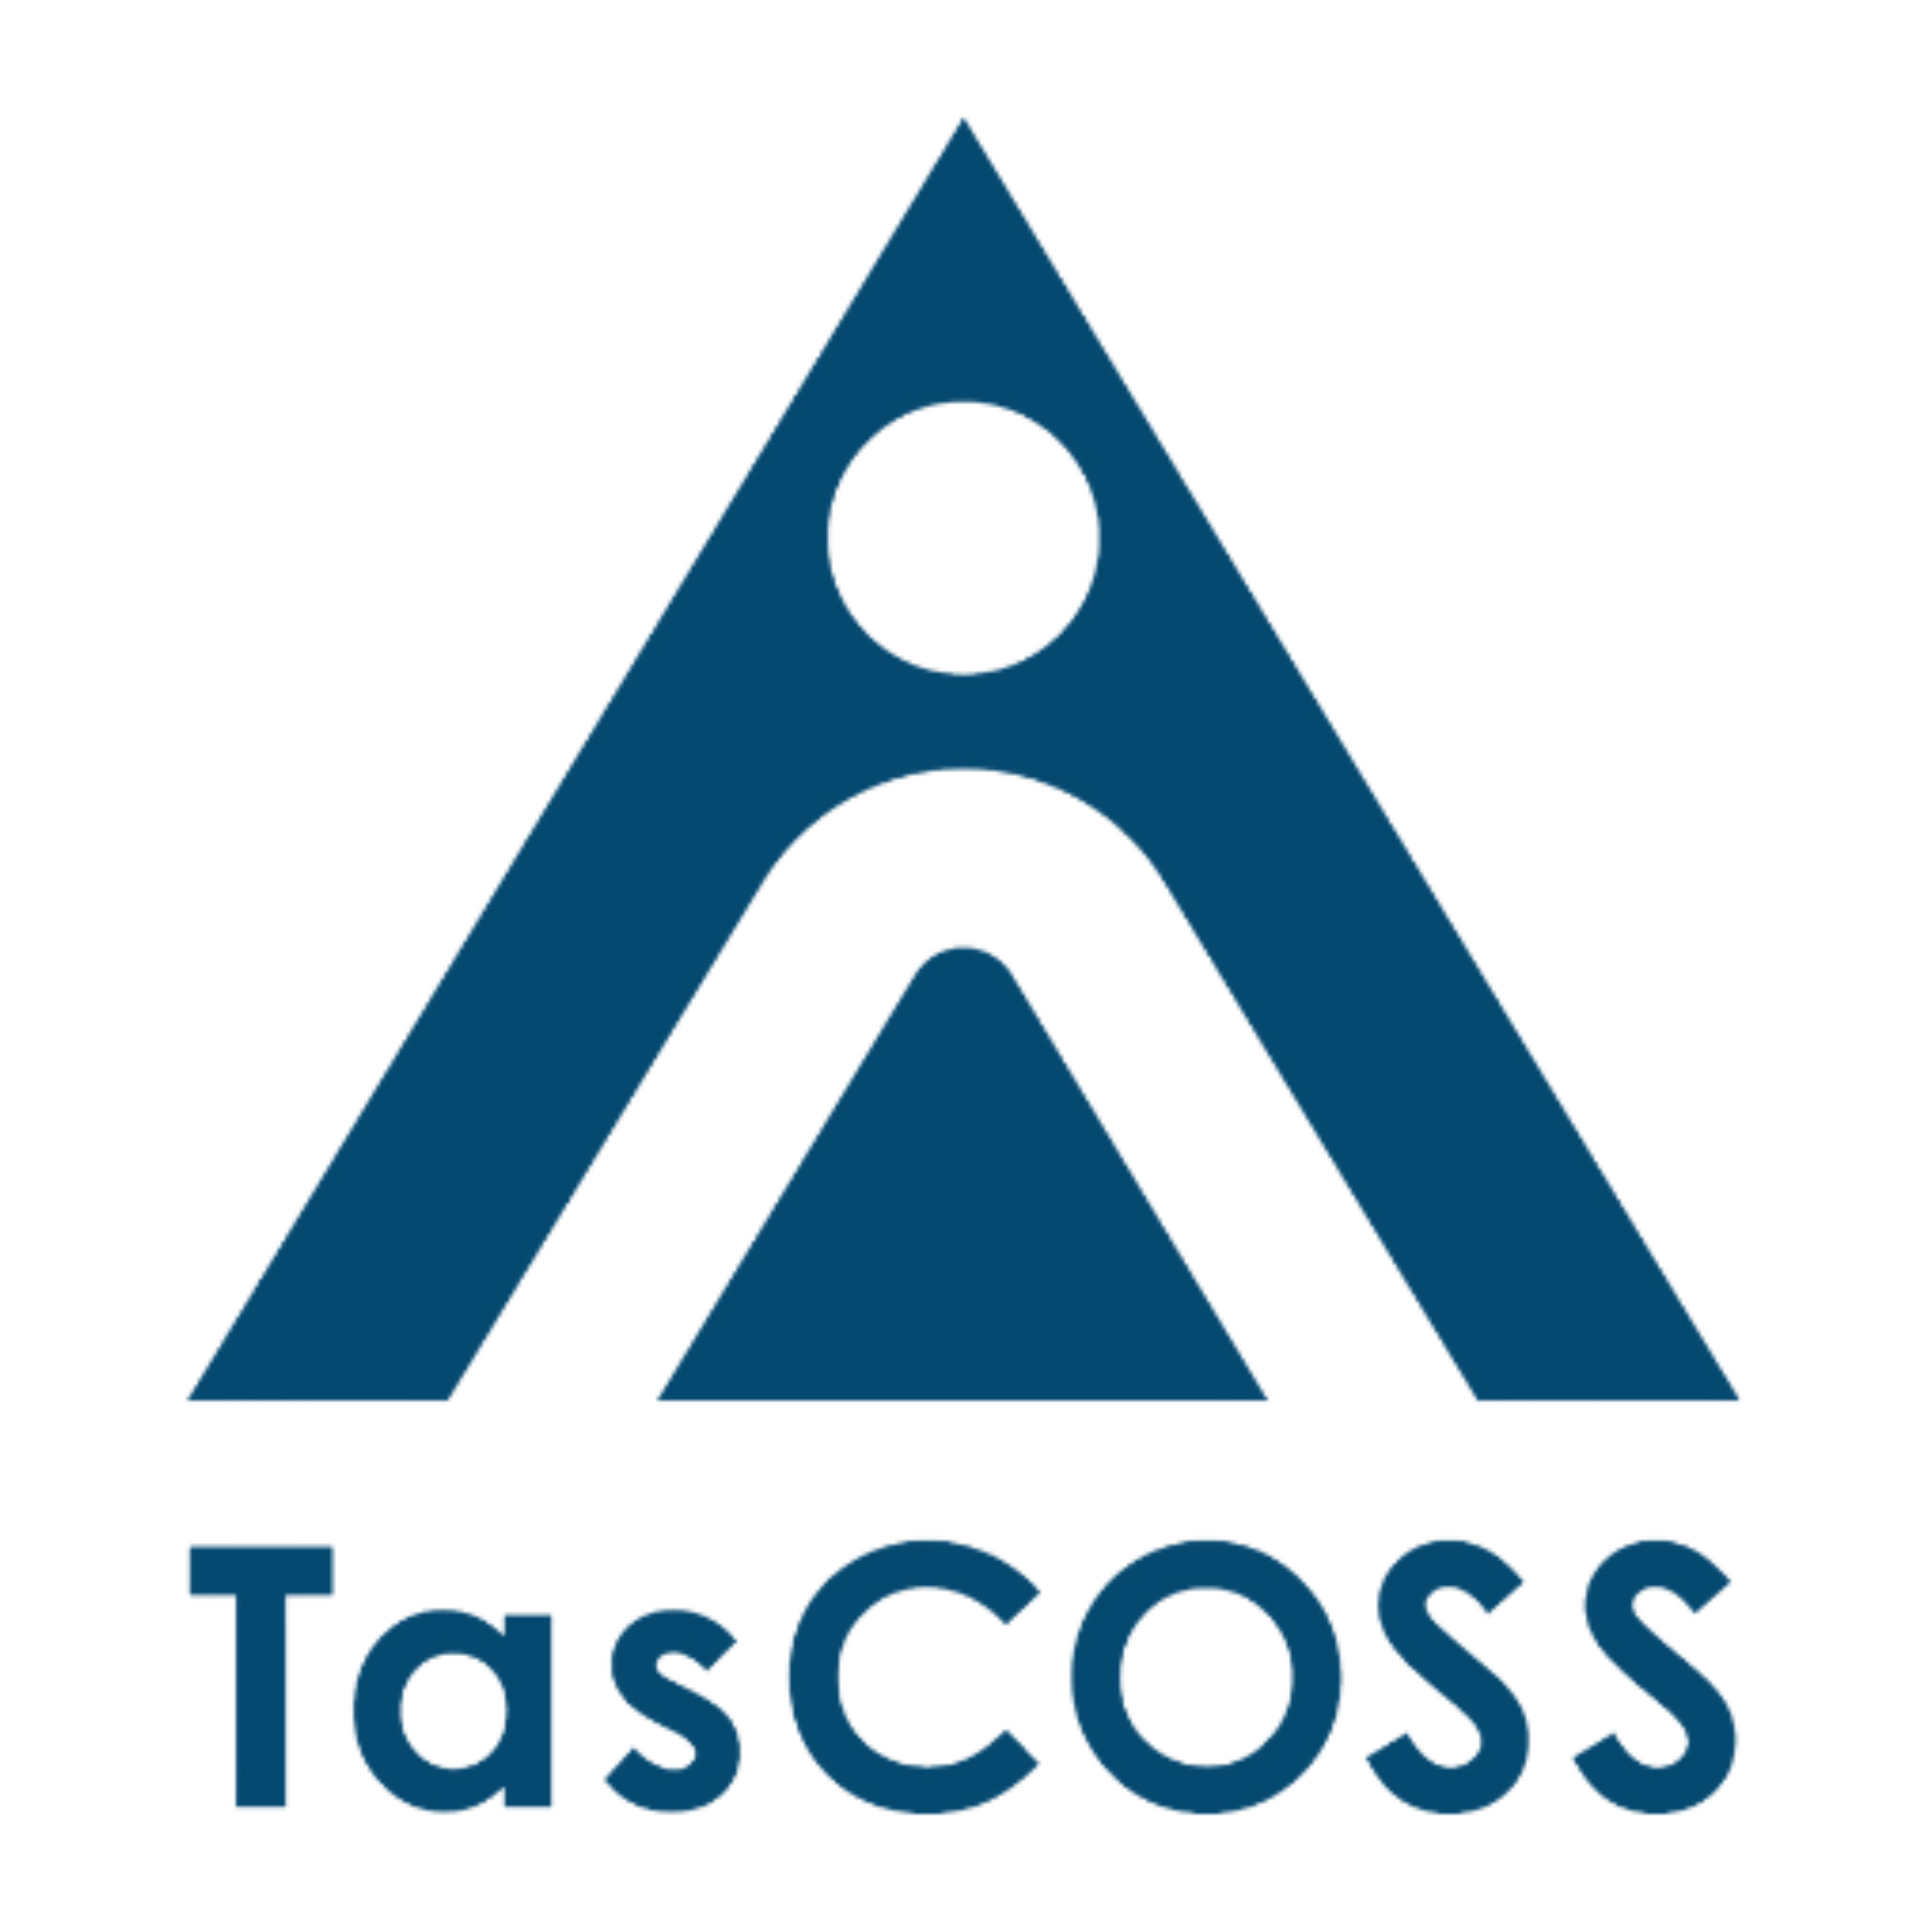 TasCOSS : Brand Short Description Type Here.